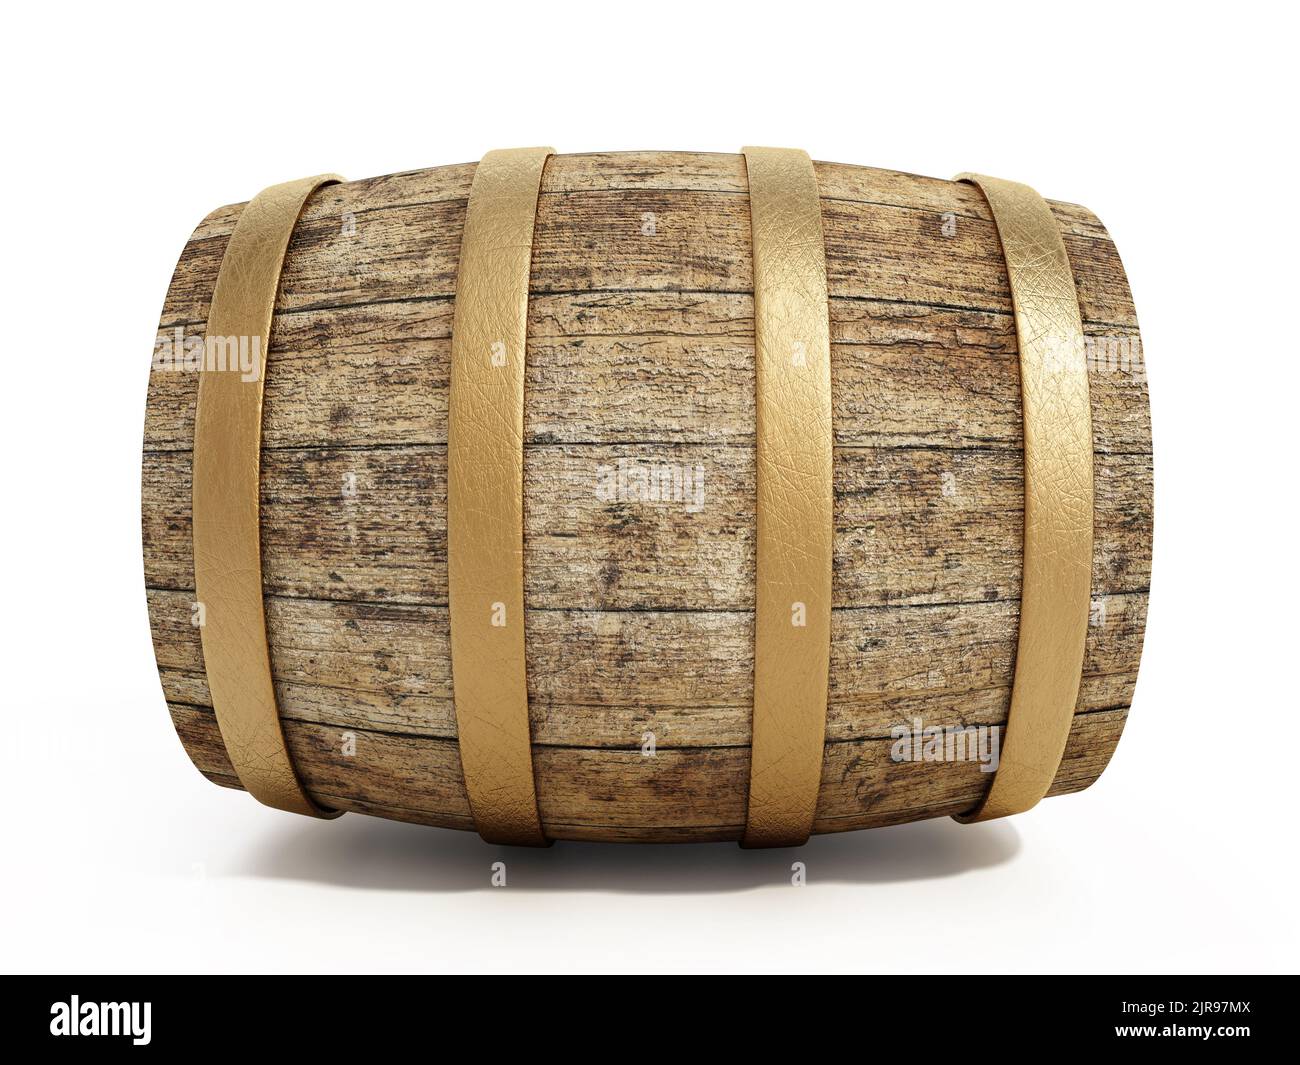 Aged wine barrel isolated on white background. 3D illustration. Stock Photo